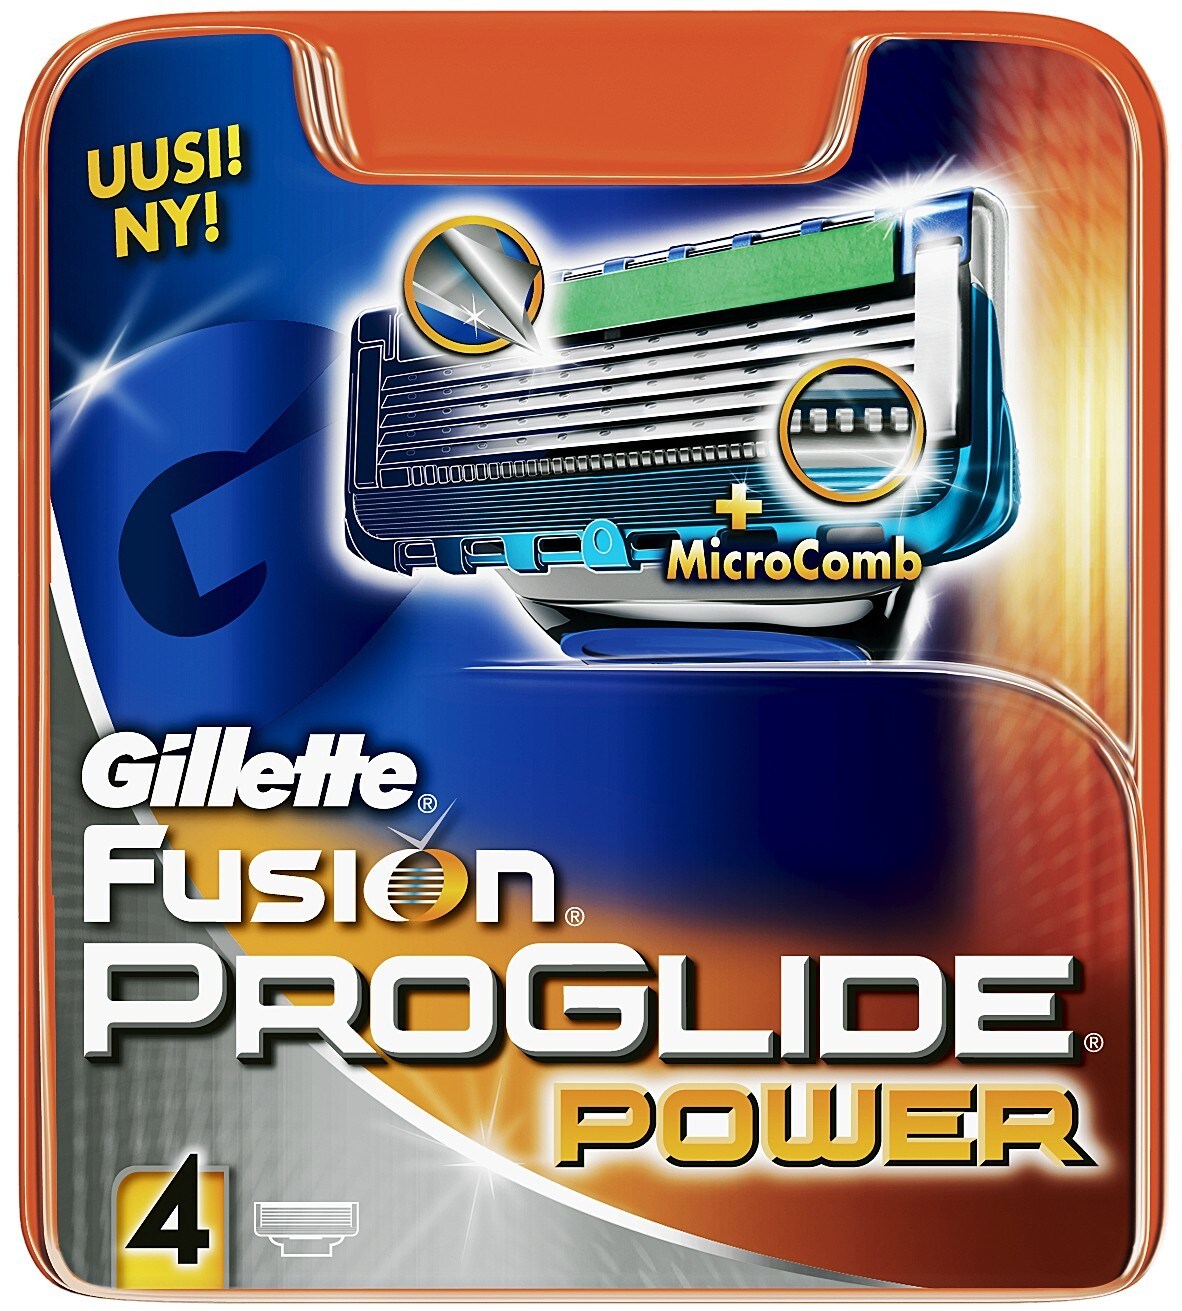 Gillette Fusion ProGlide Power barberblader - Elkjøp